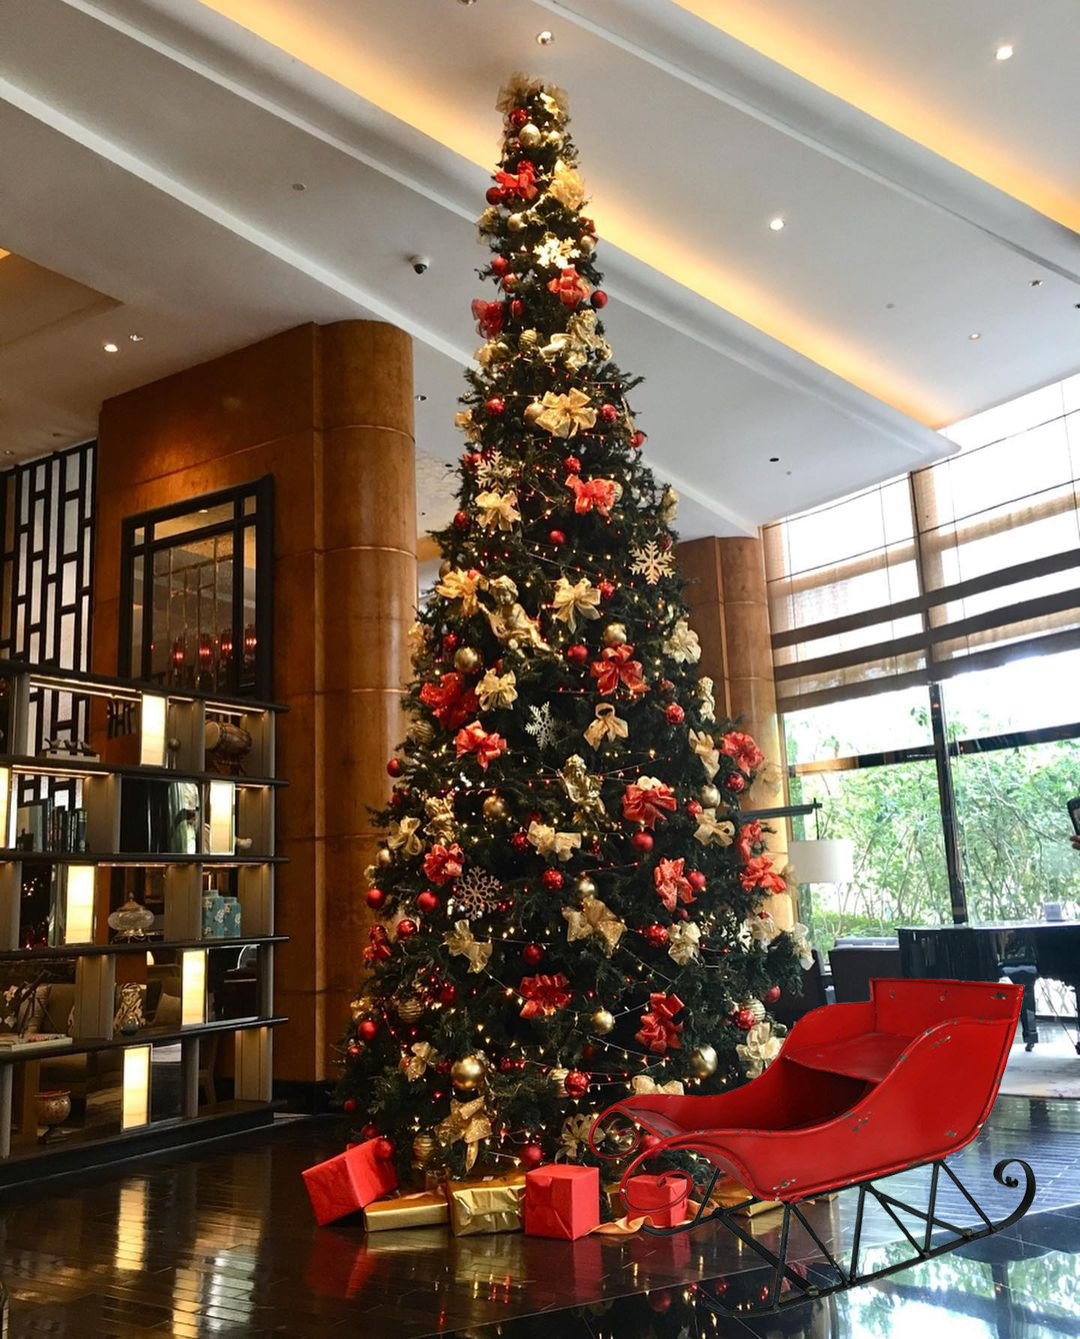 Weihnachtsdekoration in Hotel: großer Weihnachtsbaum und Weihnachtsschlitten